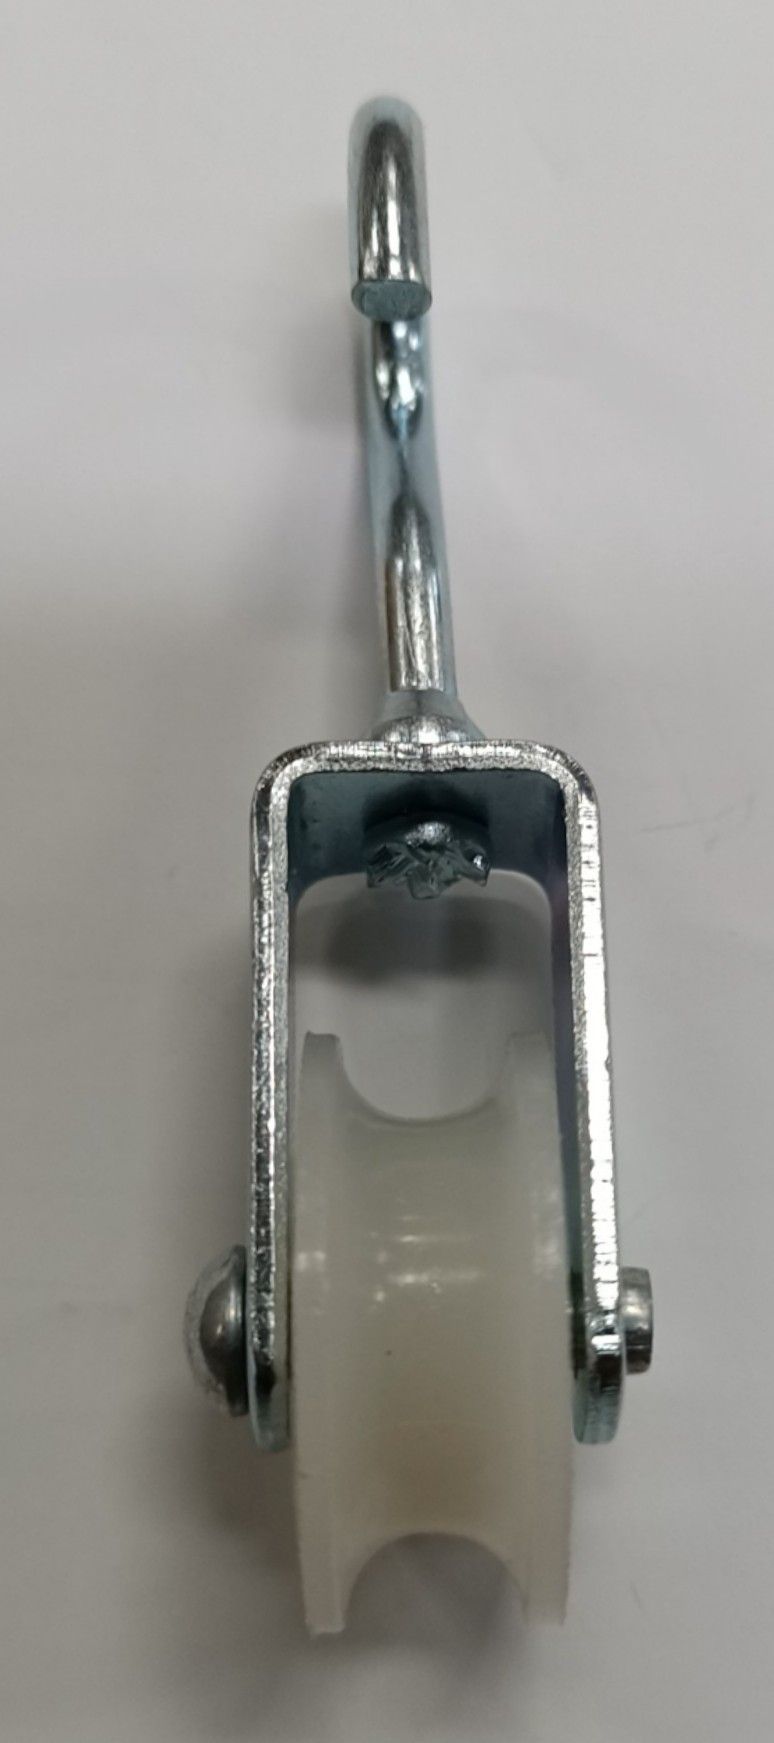 Carrucola nylon mm 40 supporto girevole con gancio aperto in acciaio zincato